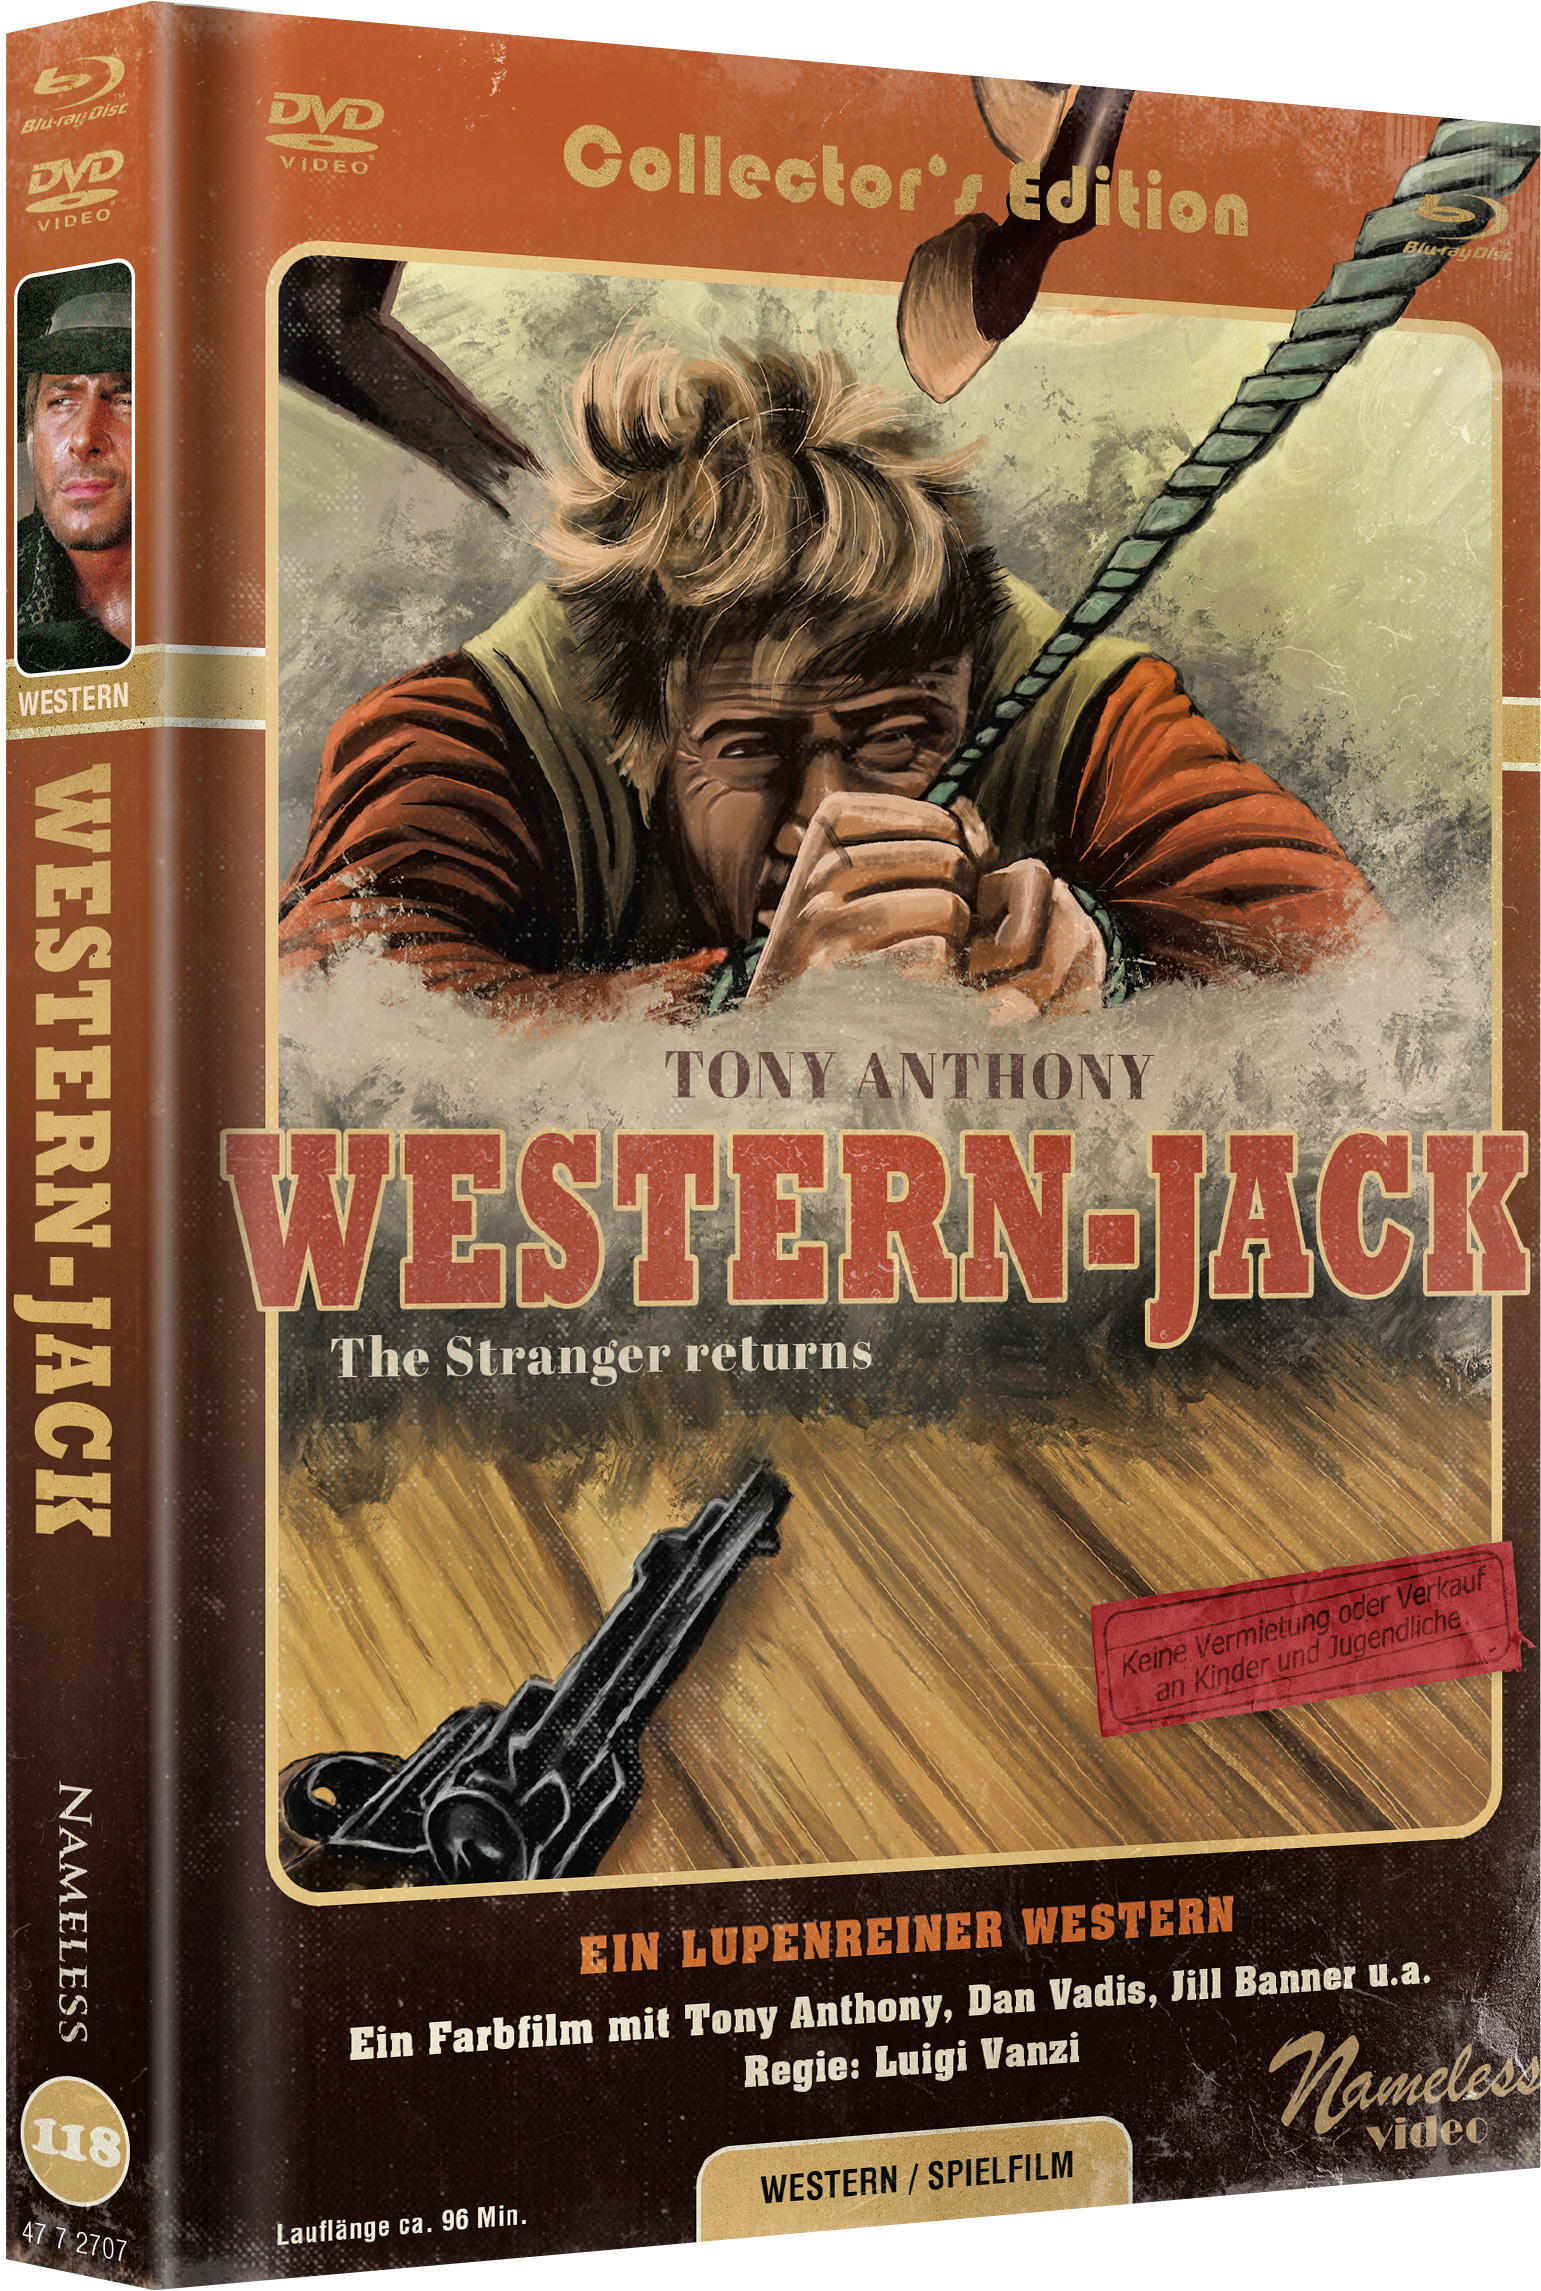 WESTERN JACK COVER C MEDIABOOK